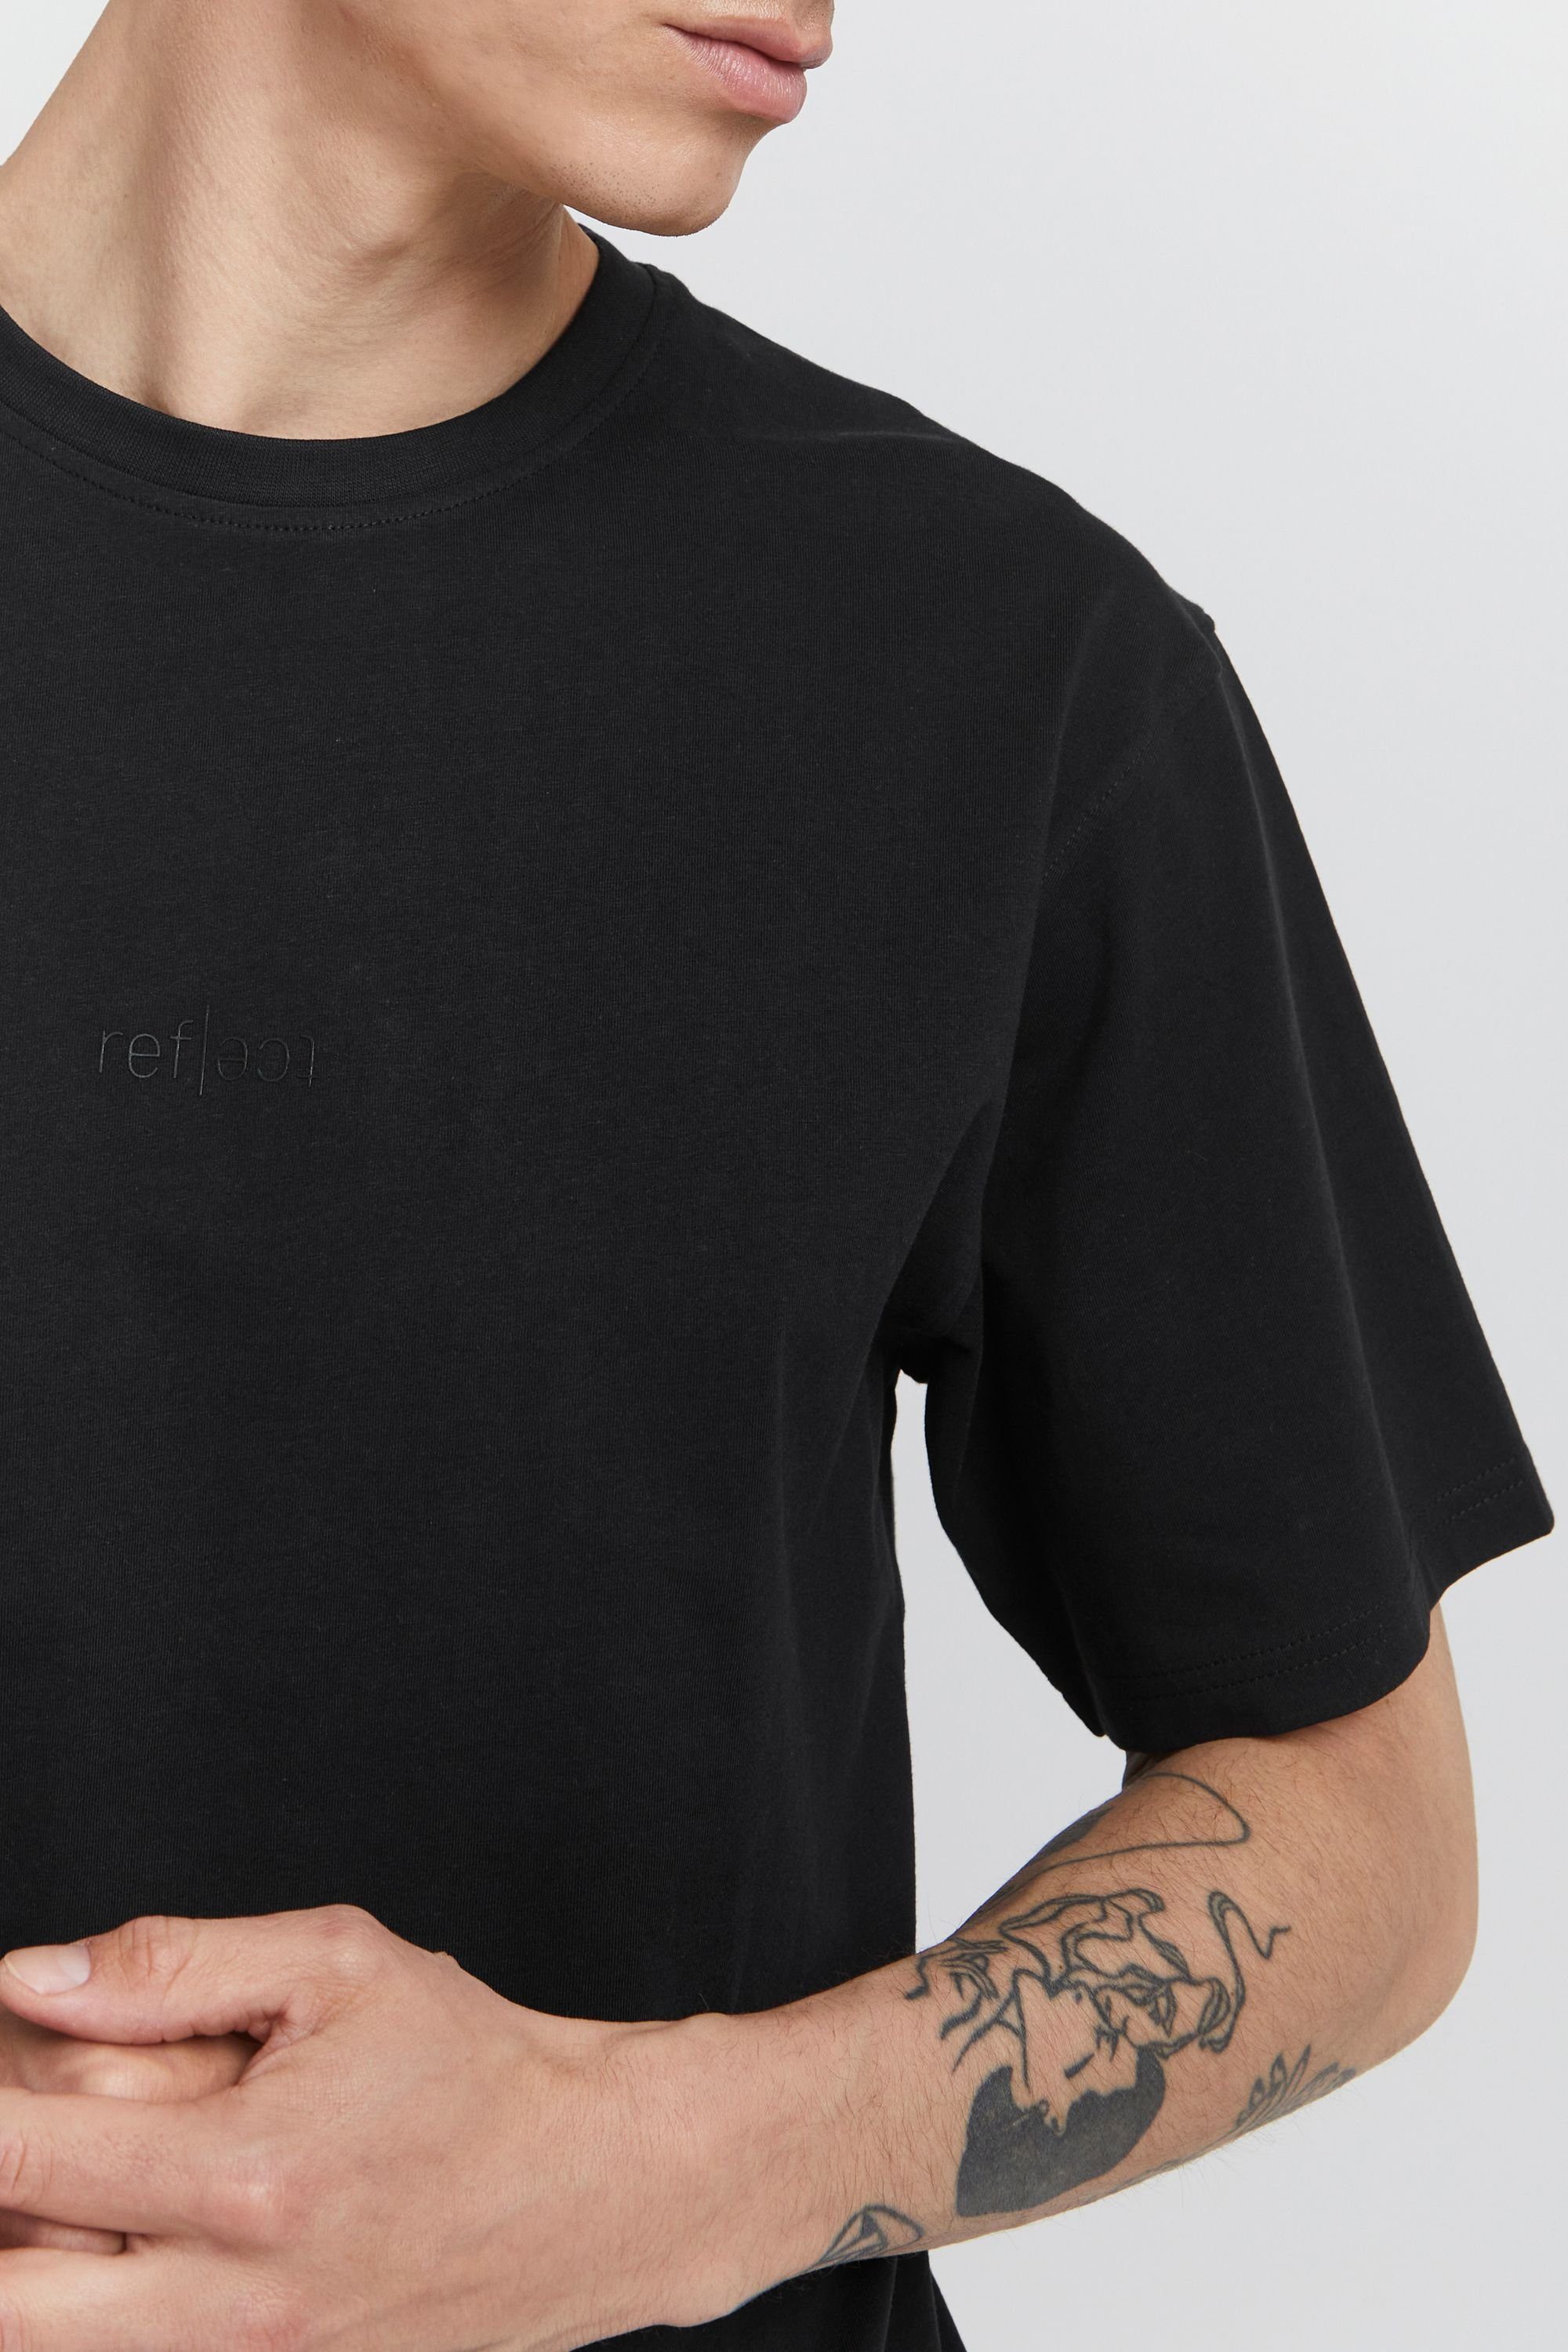 SDBrendan (194008) True T-Shirt Black !Solid